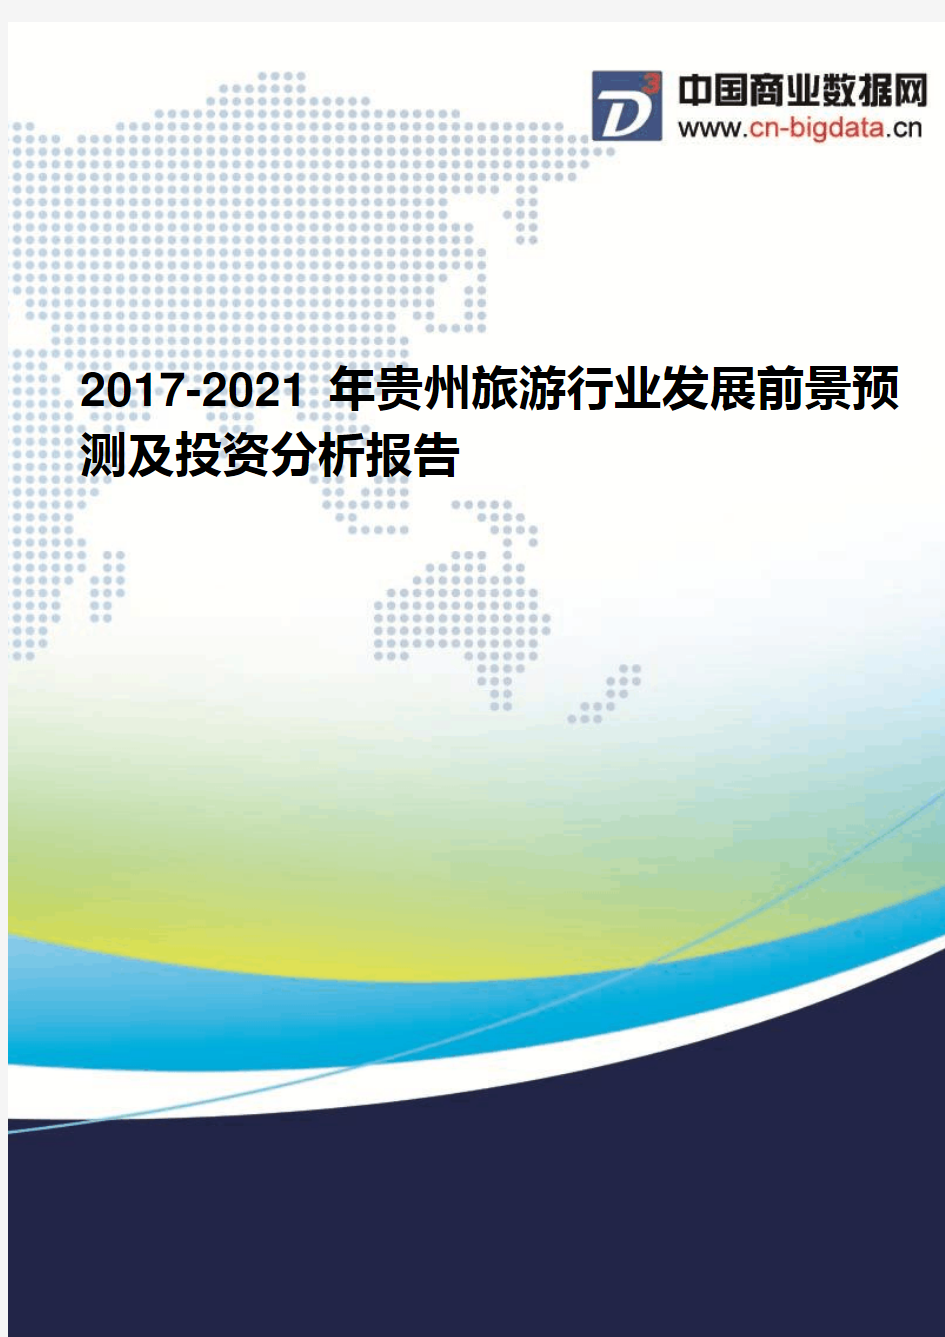 2017-2021年贵州旅游行业发展前景预测及投资分析报告(2017版目录)